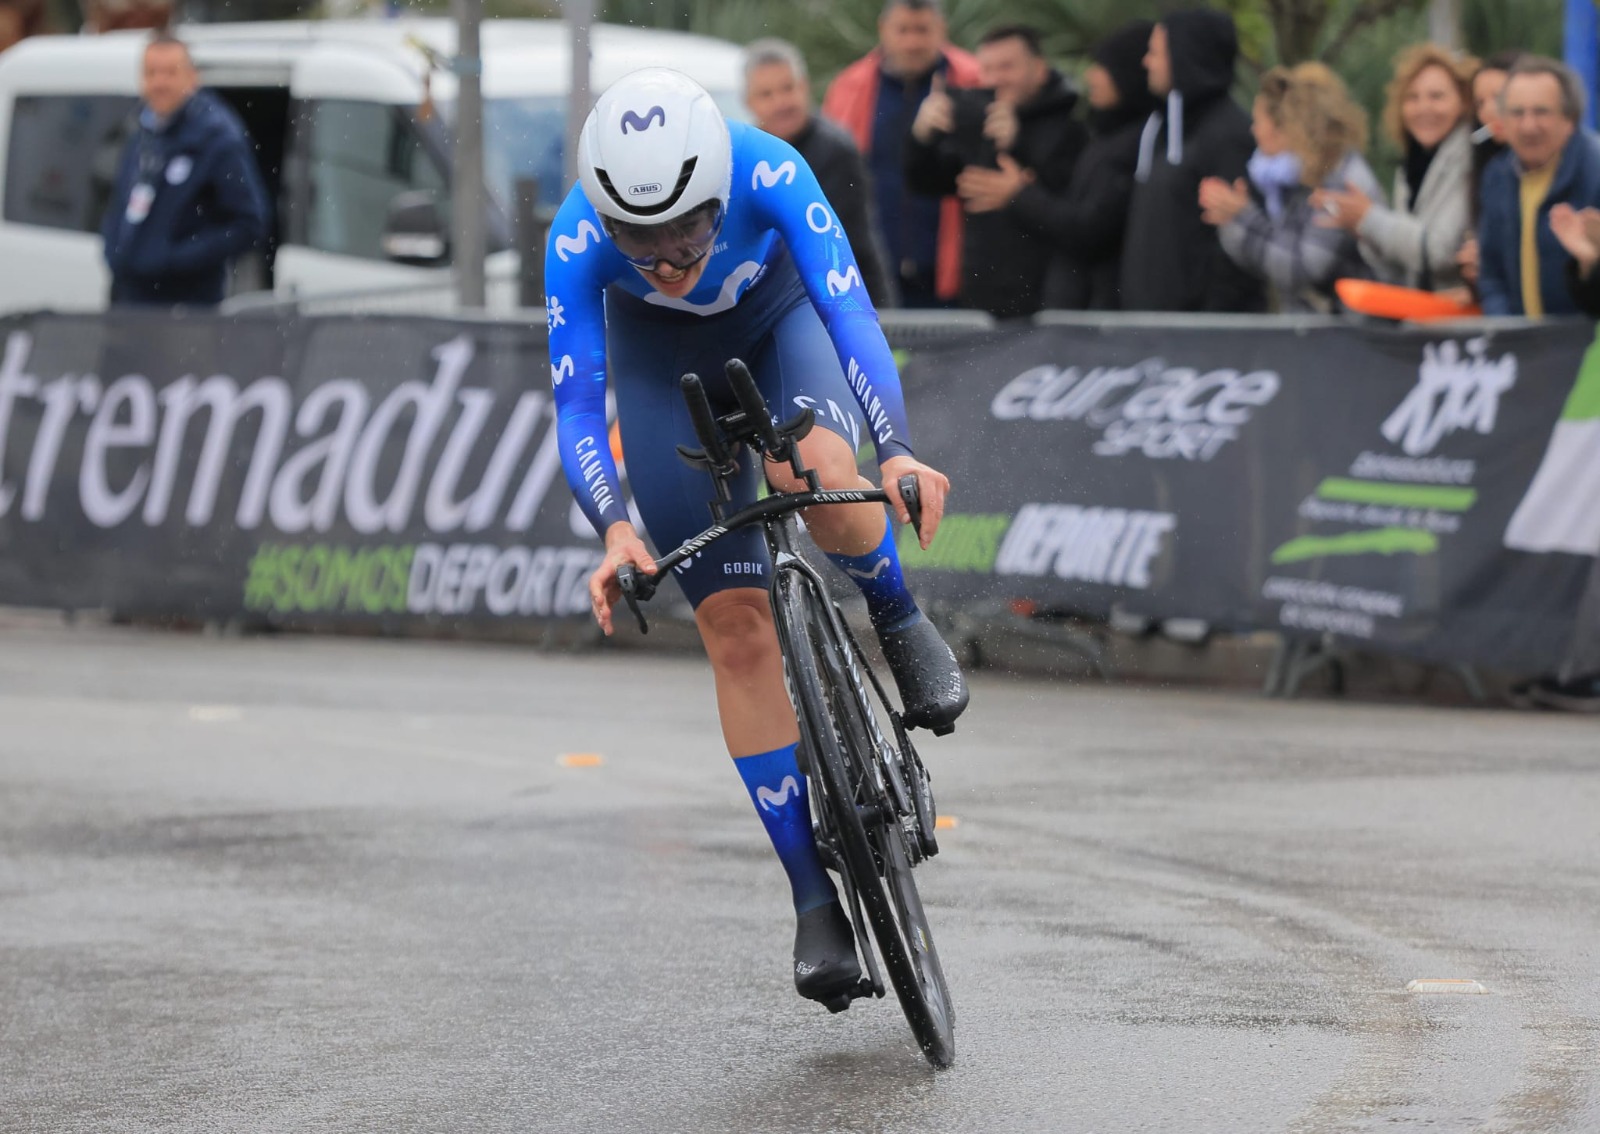 Image 3 of article La holandesa Mareille Meijering gana la Vuelta Ciclista a Extremadura femenina tras tres días de competición